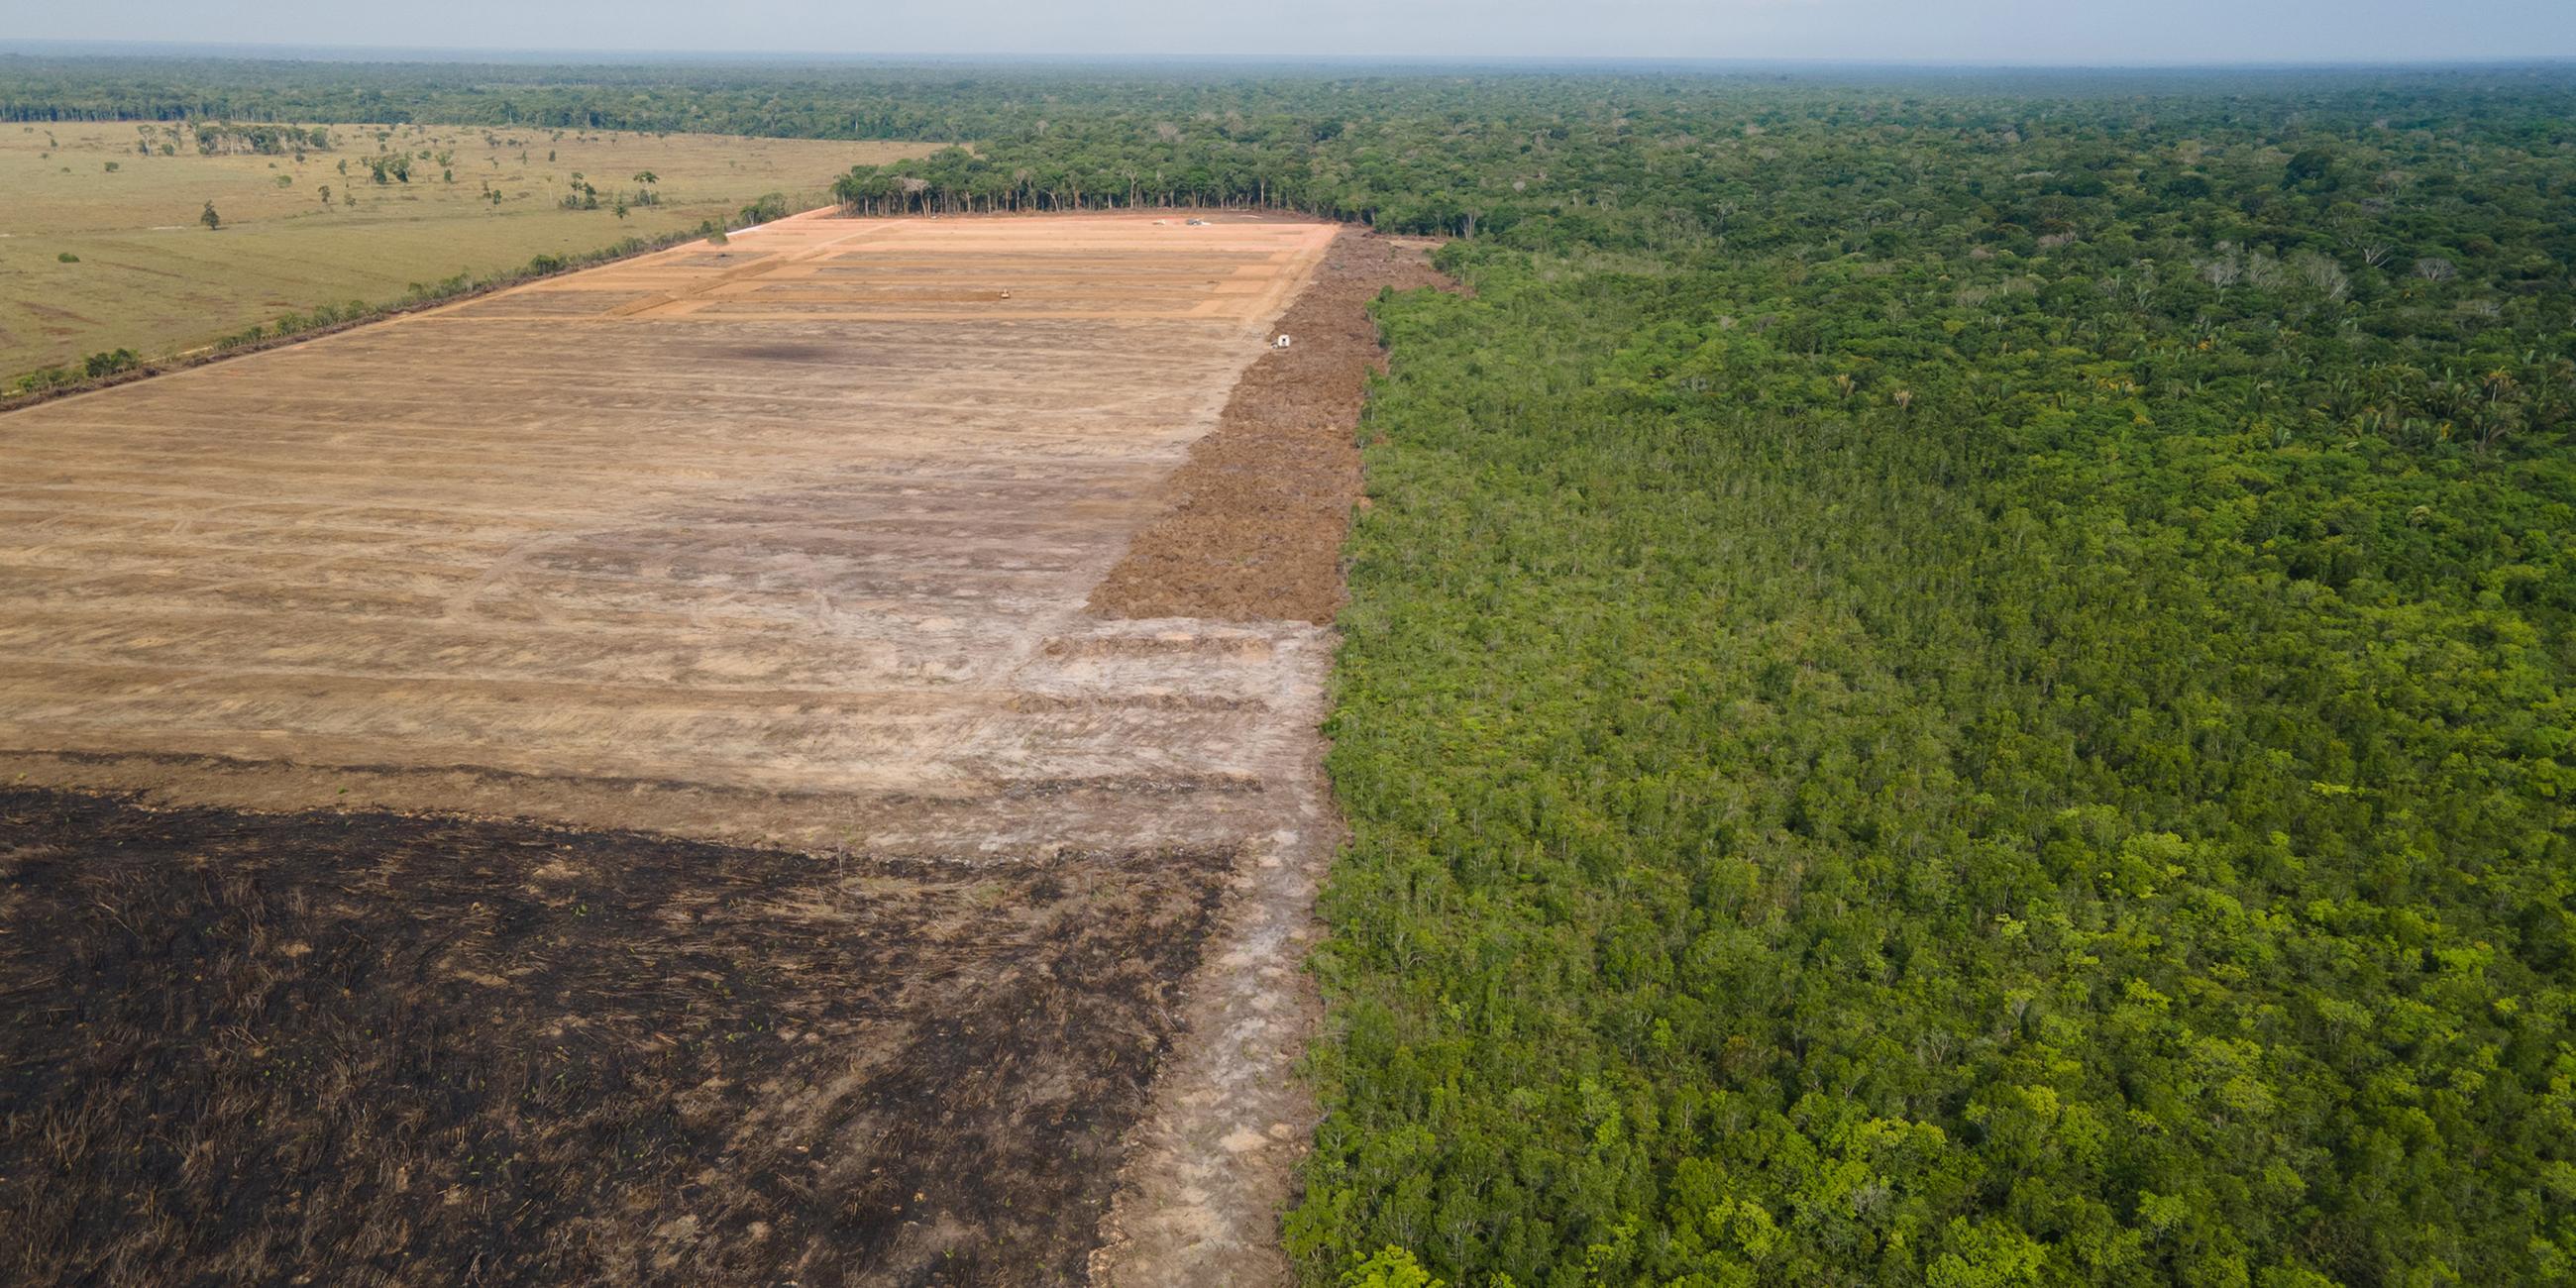 Abgeholzte Fläche im Amazonas-Gebiet